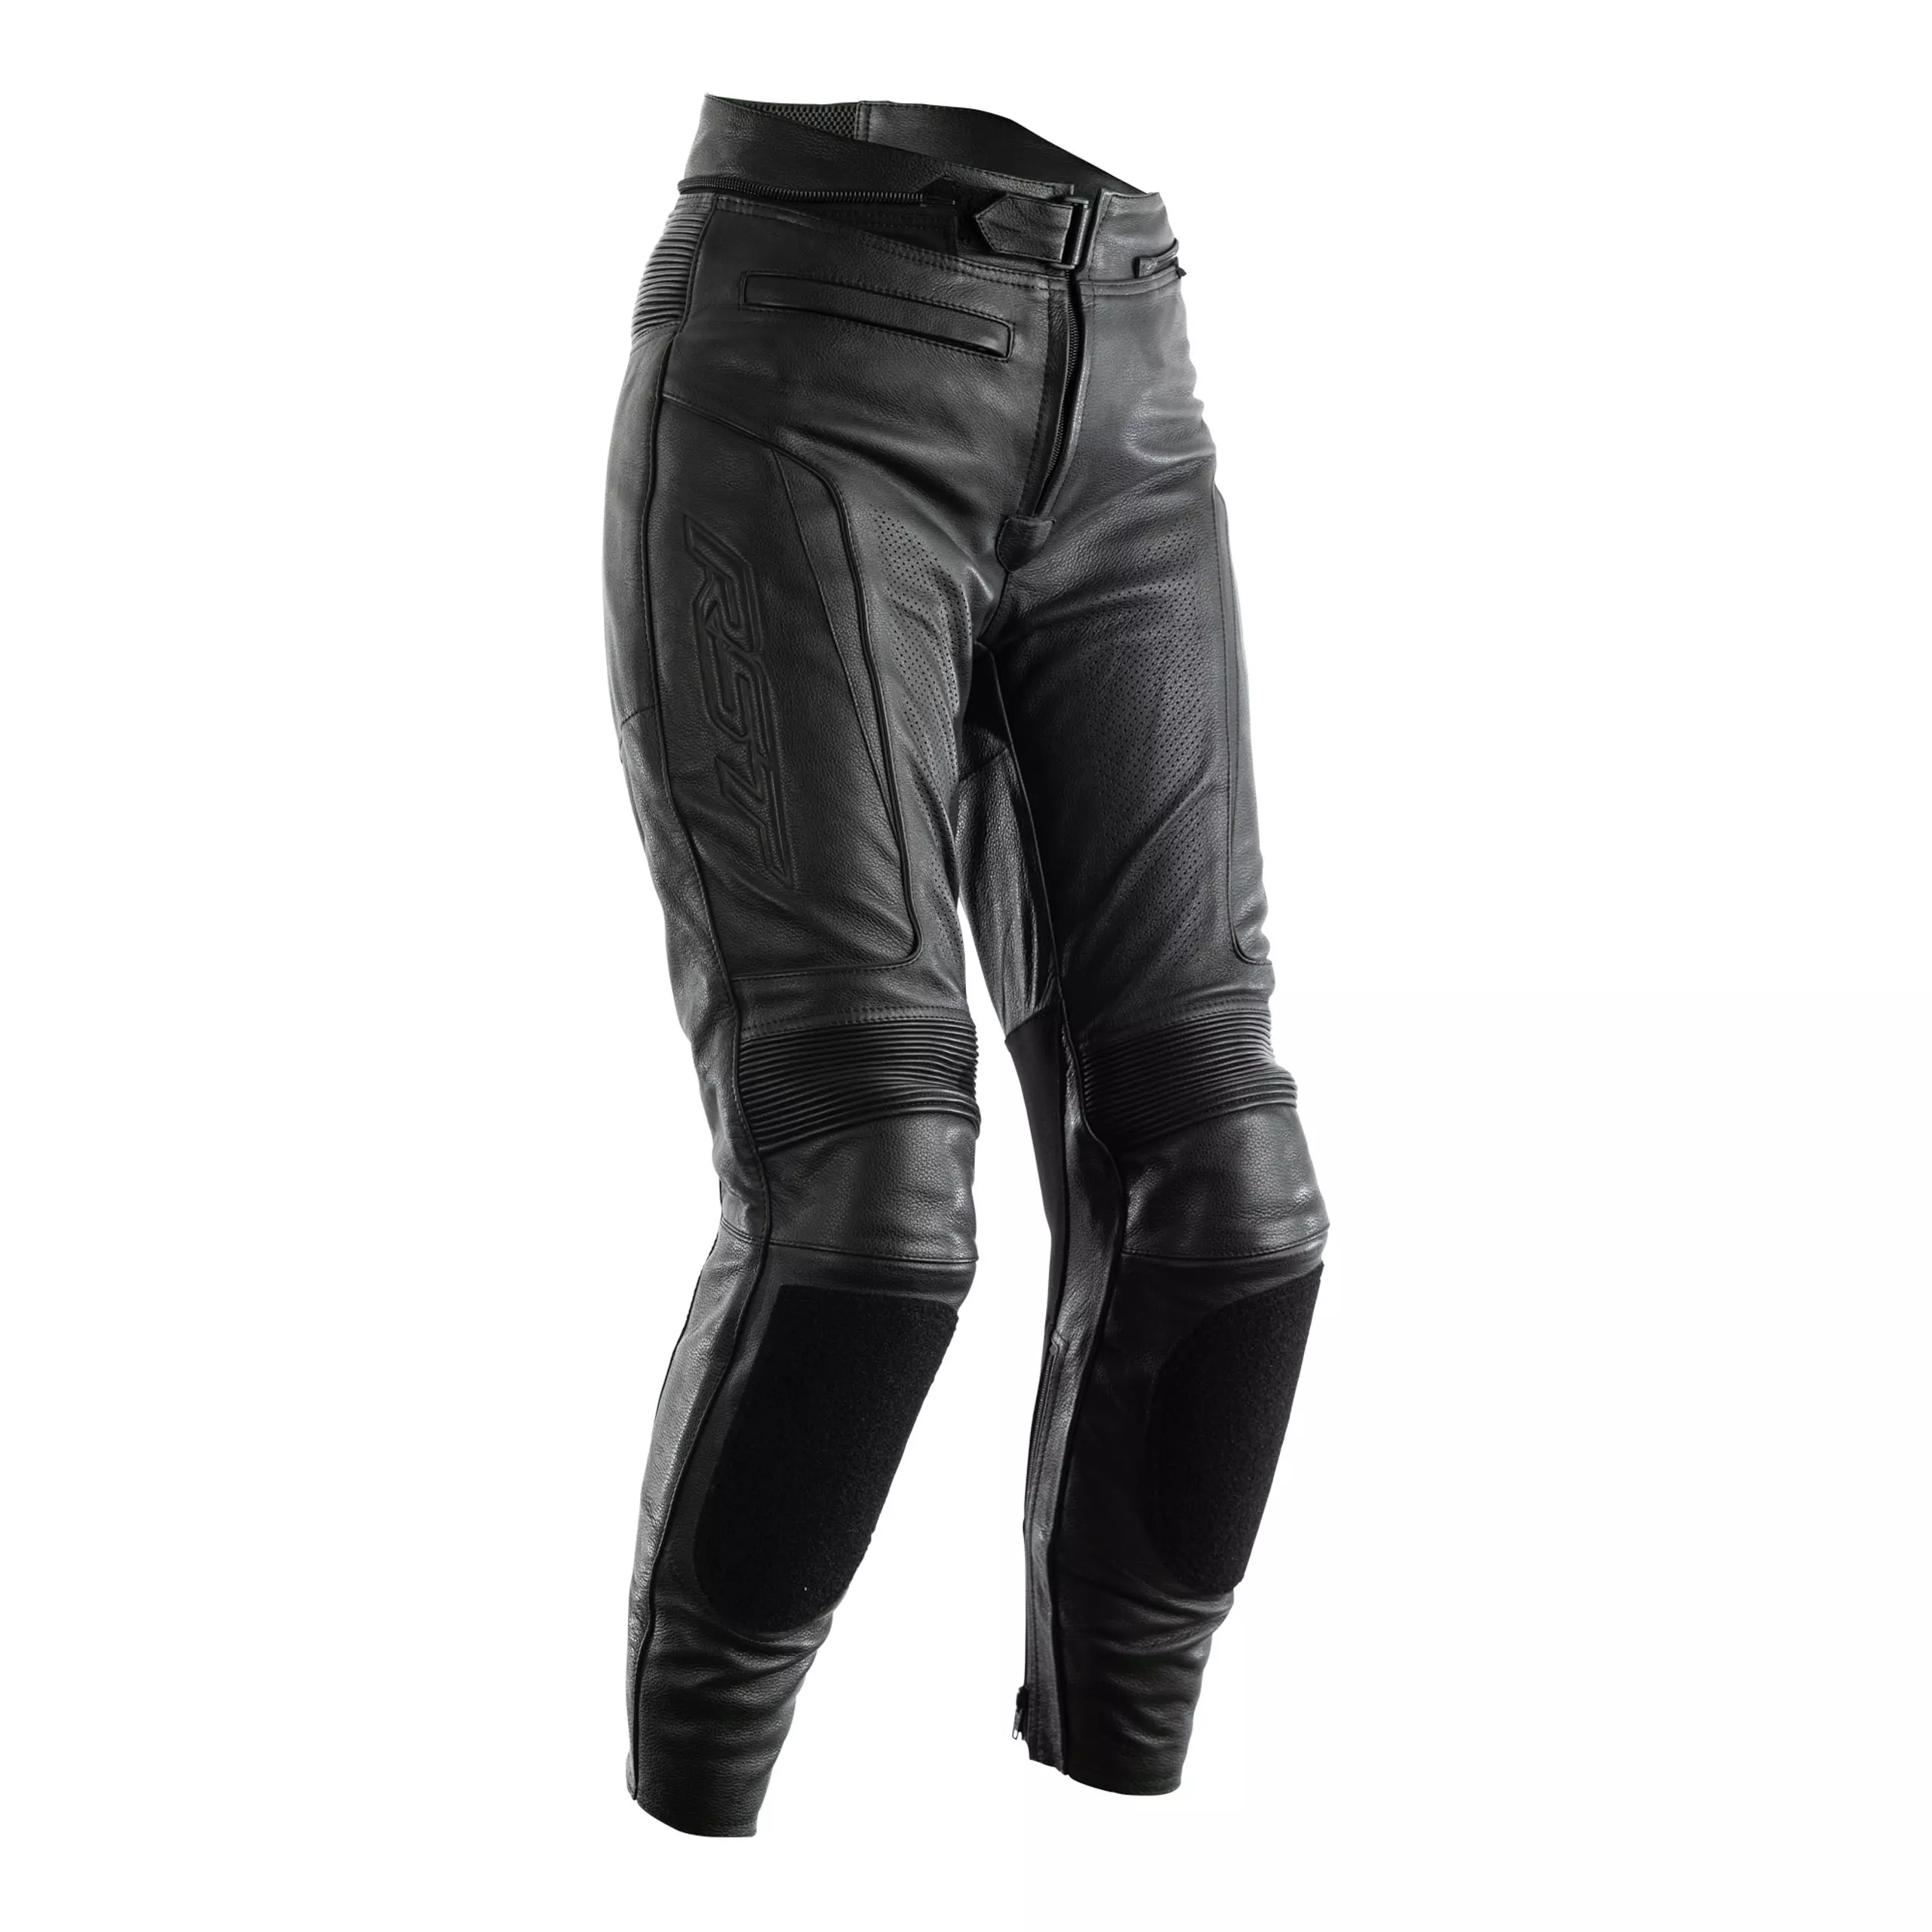 Motorcykelbukser i læder til kvinder RST Lady GT sort S